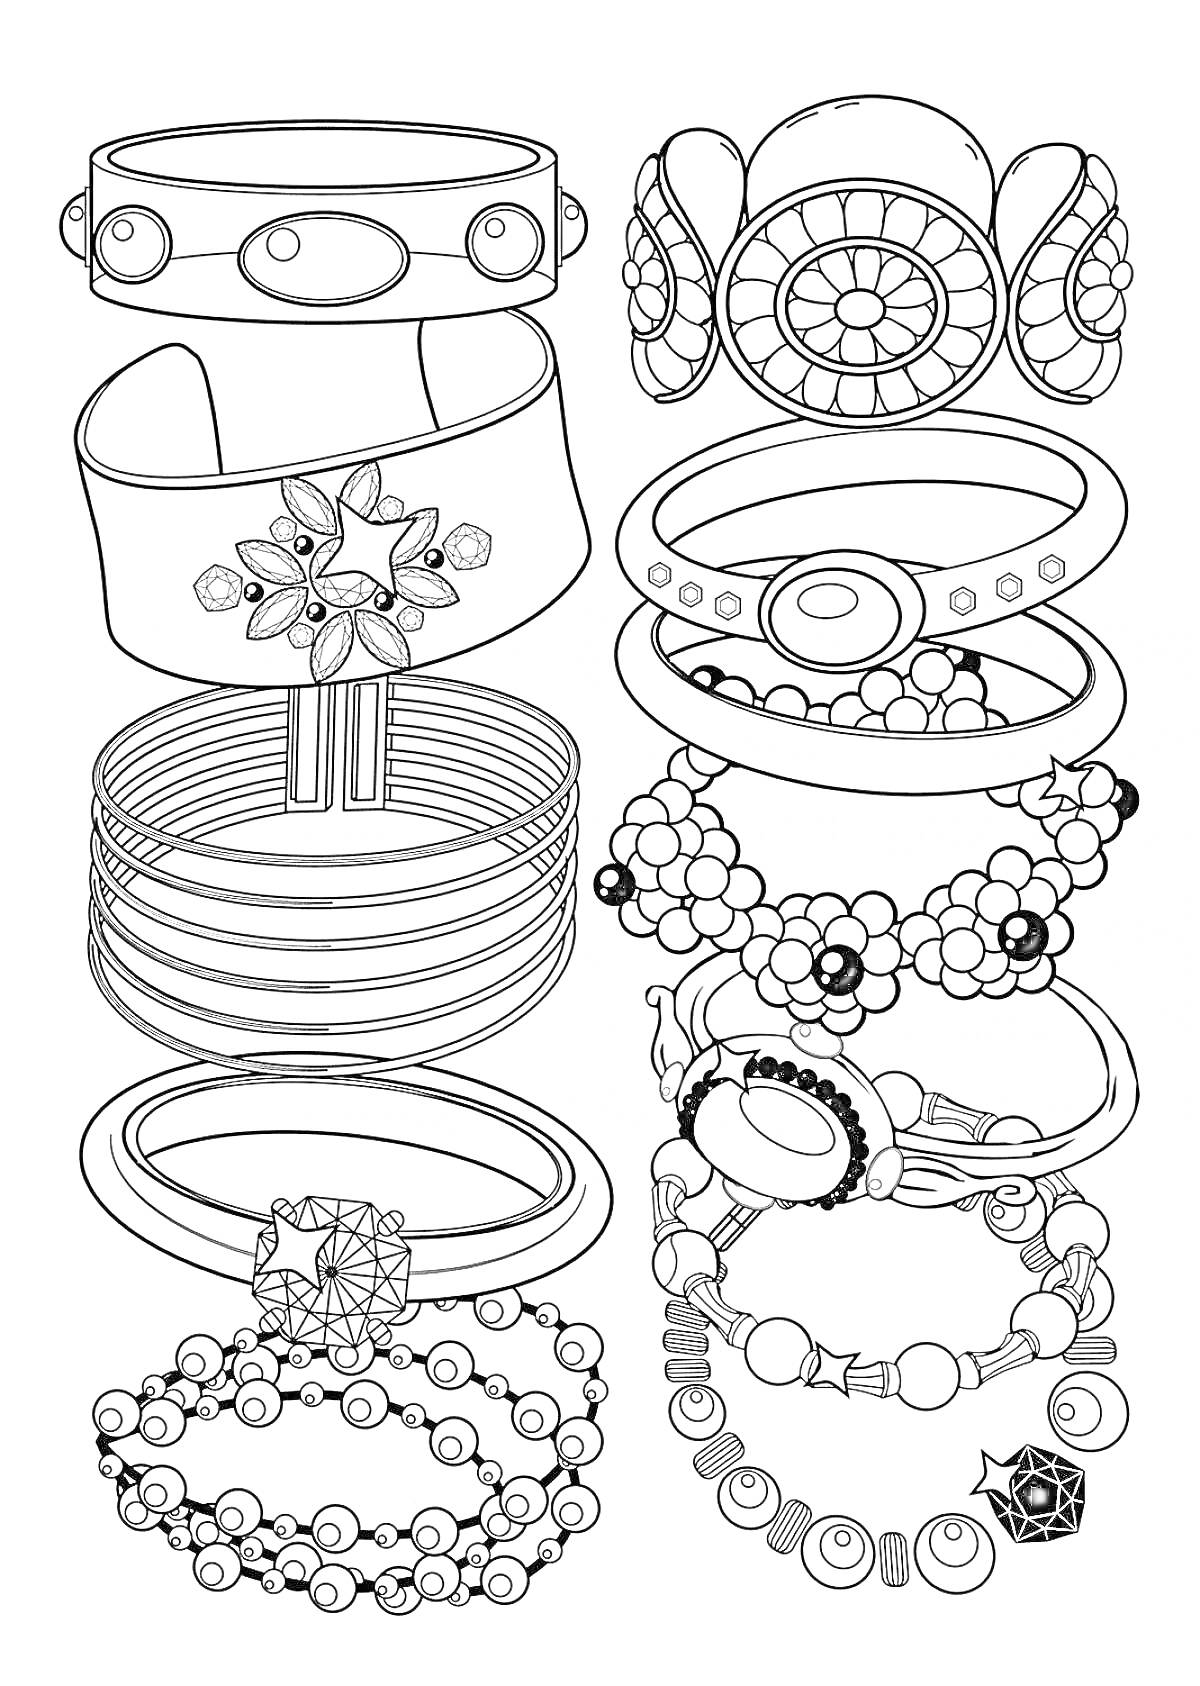  Браслеты и кольца с орнаментами, цветами, вставками и бусинами